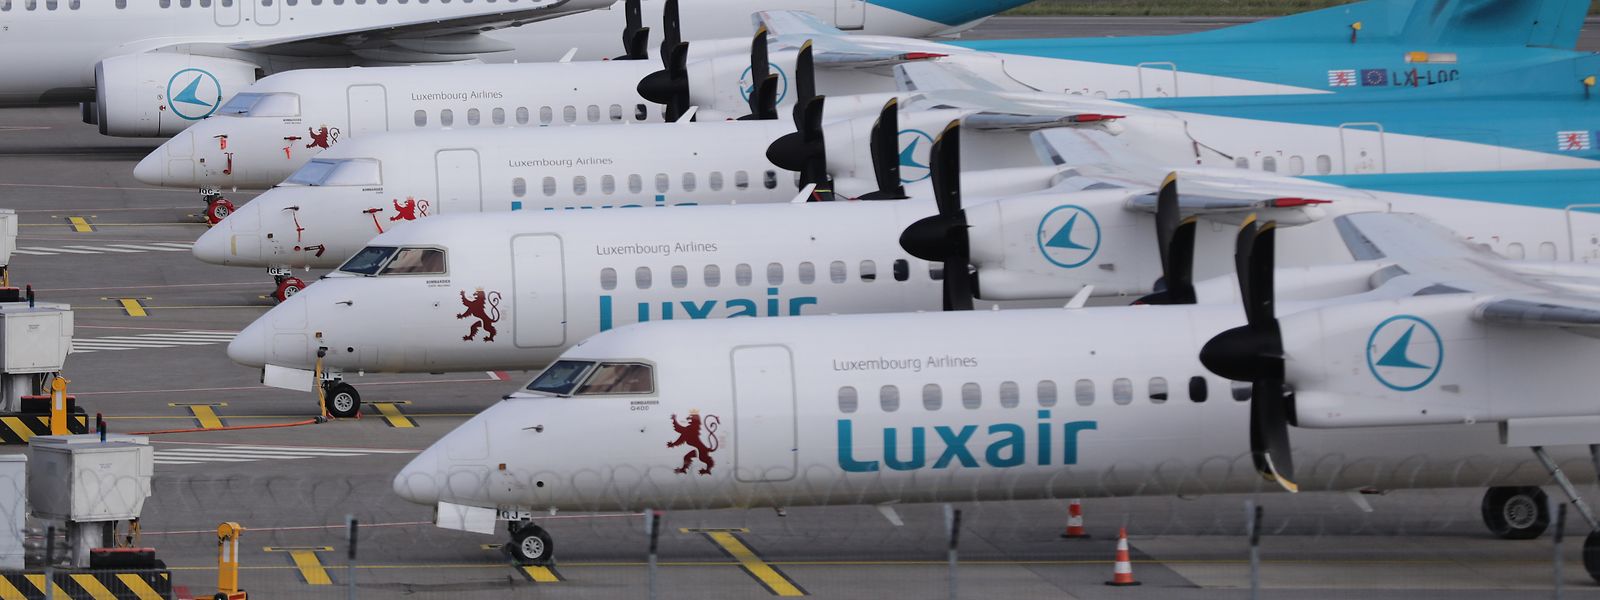 Bis es bei Luxair-Flügen schnellen Handyempfang gibt, dürfte noch einige Zeit vergehen.